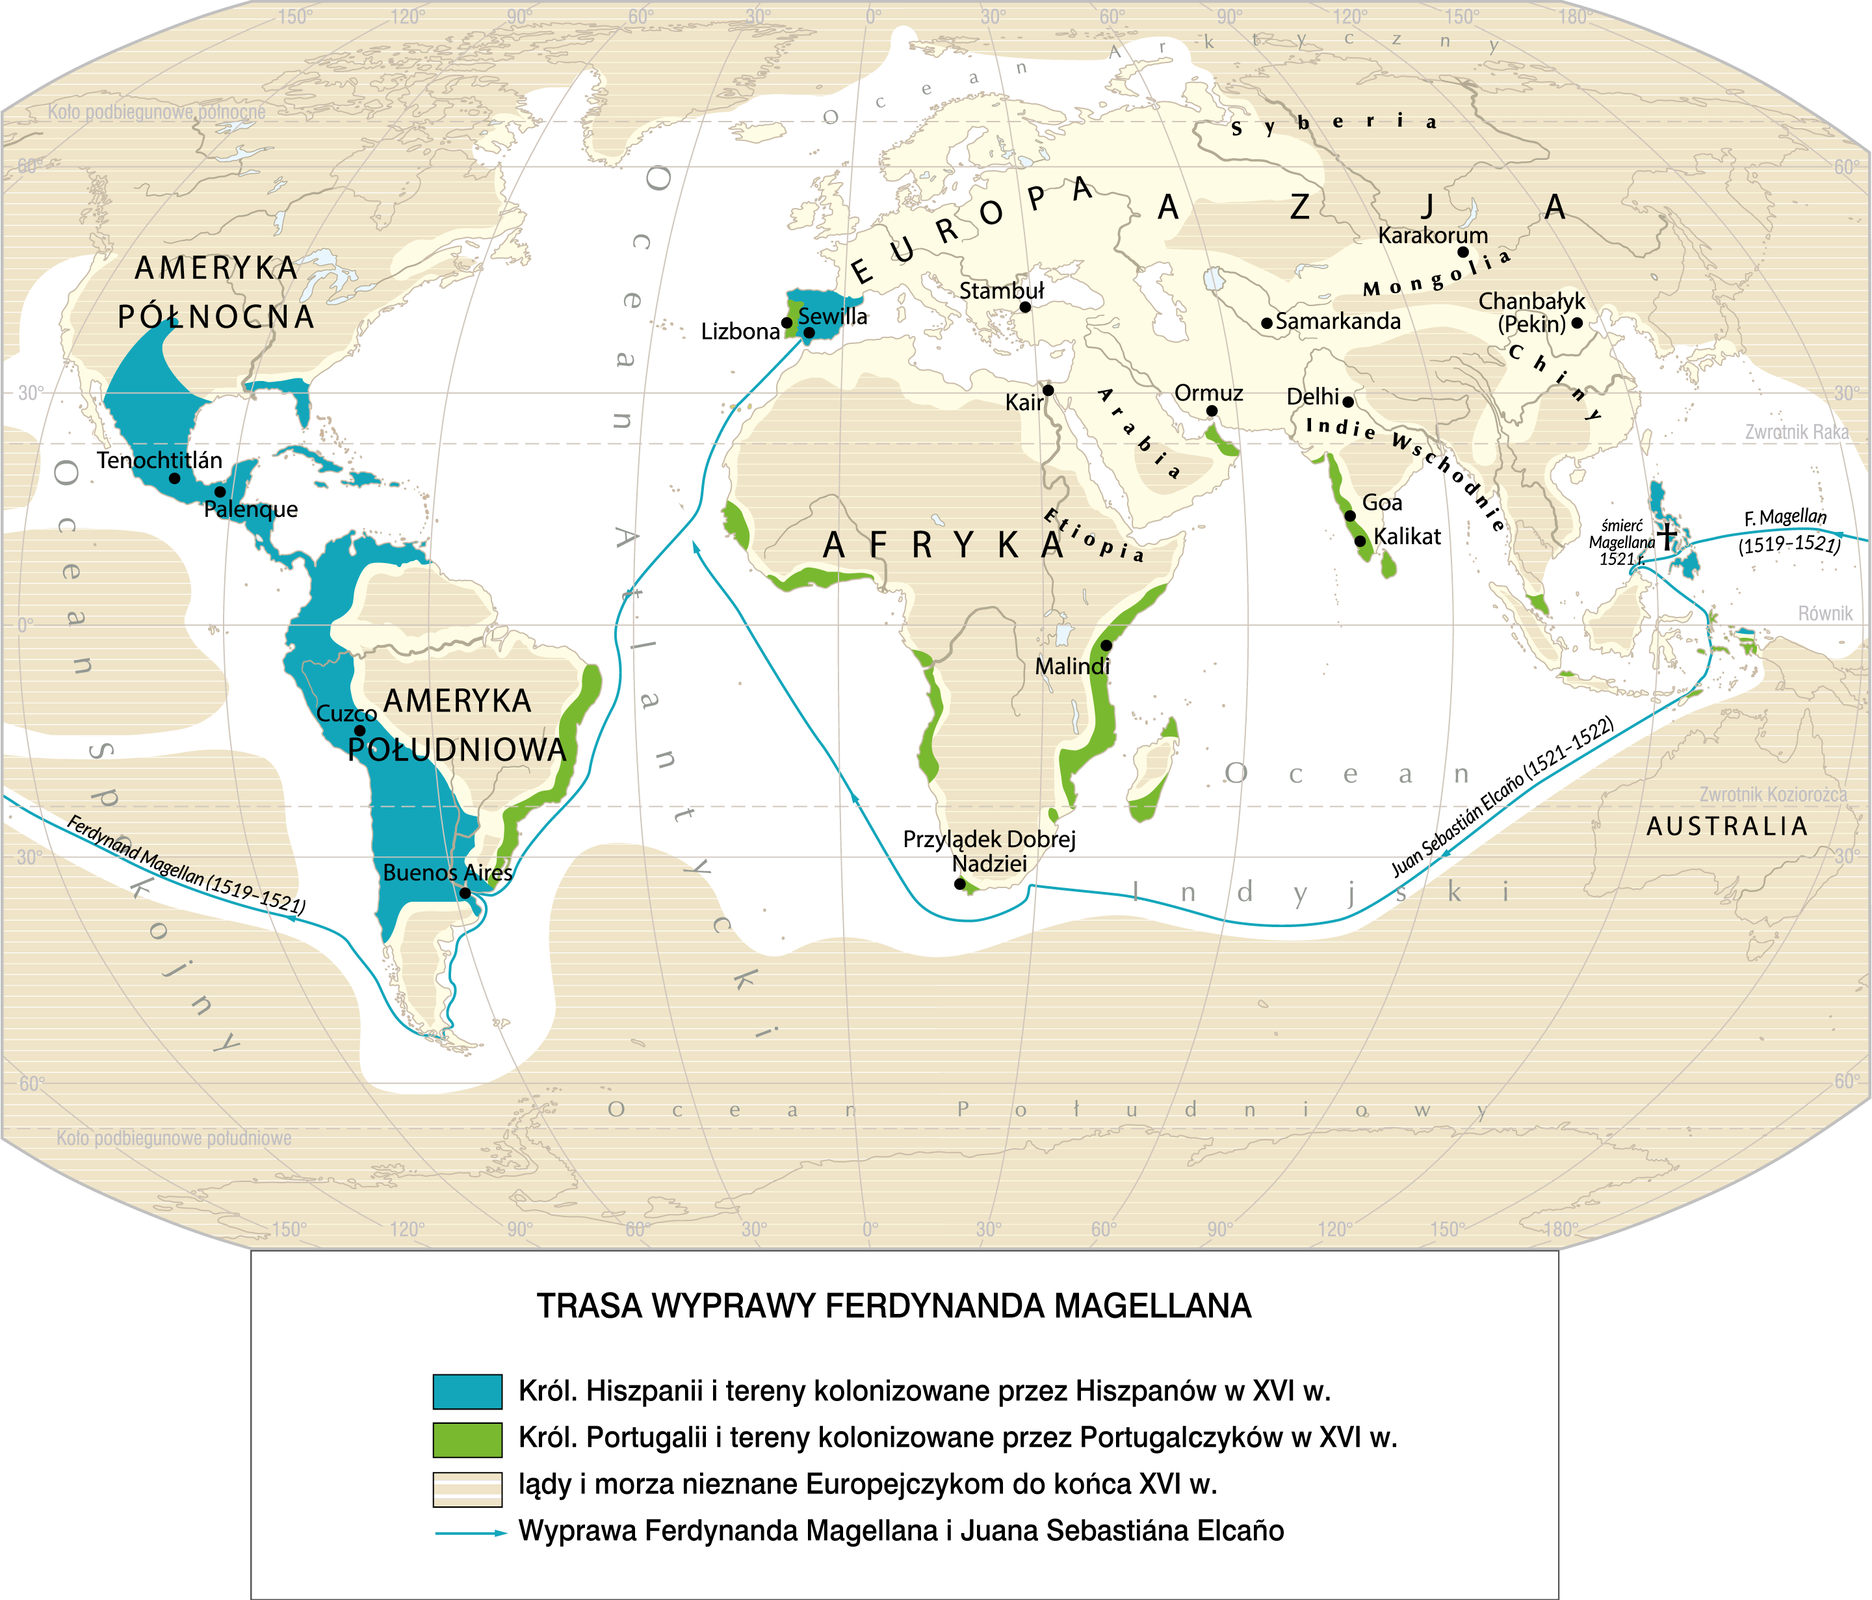 Mapa przedstawia trasę wyprawy Ferdynanda Magellana.